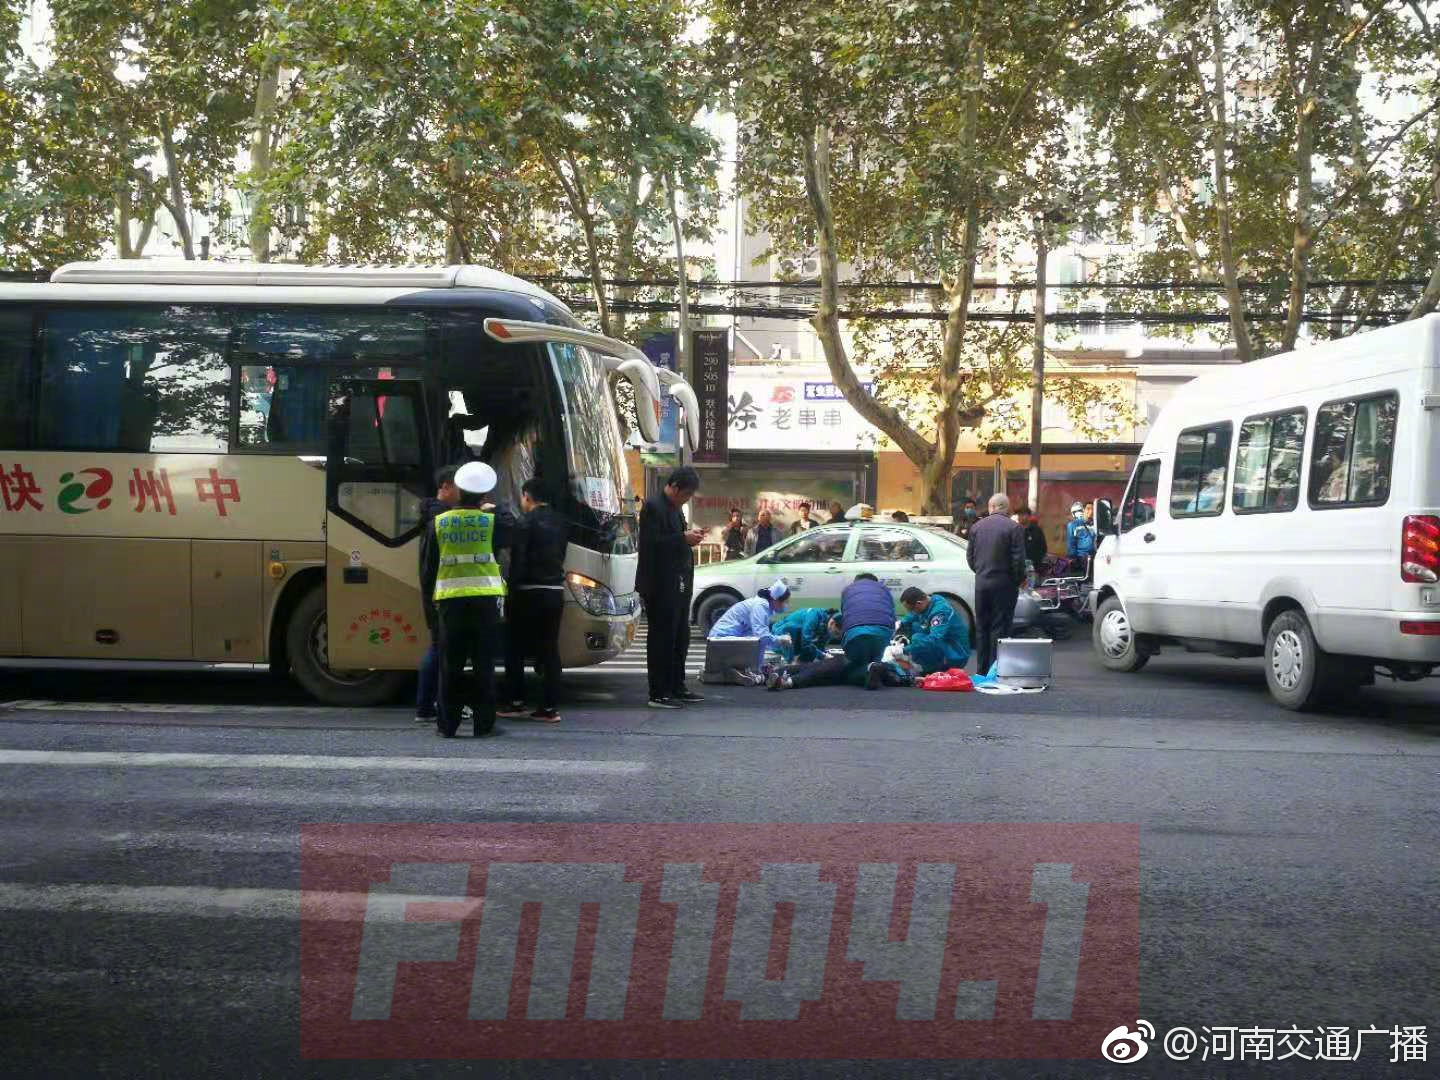 郑州一老人斑马线上被大巴车撞倒 事发时刚变绿灯